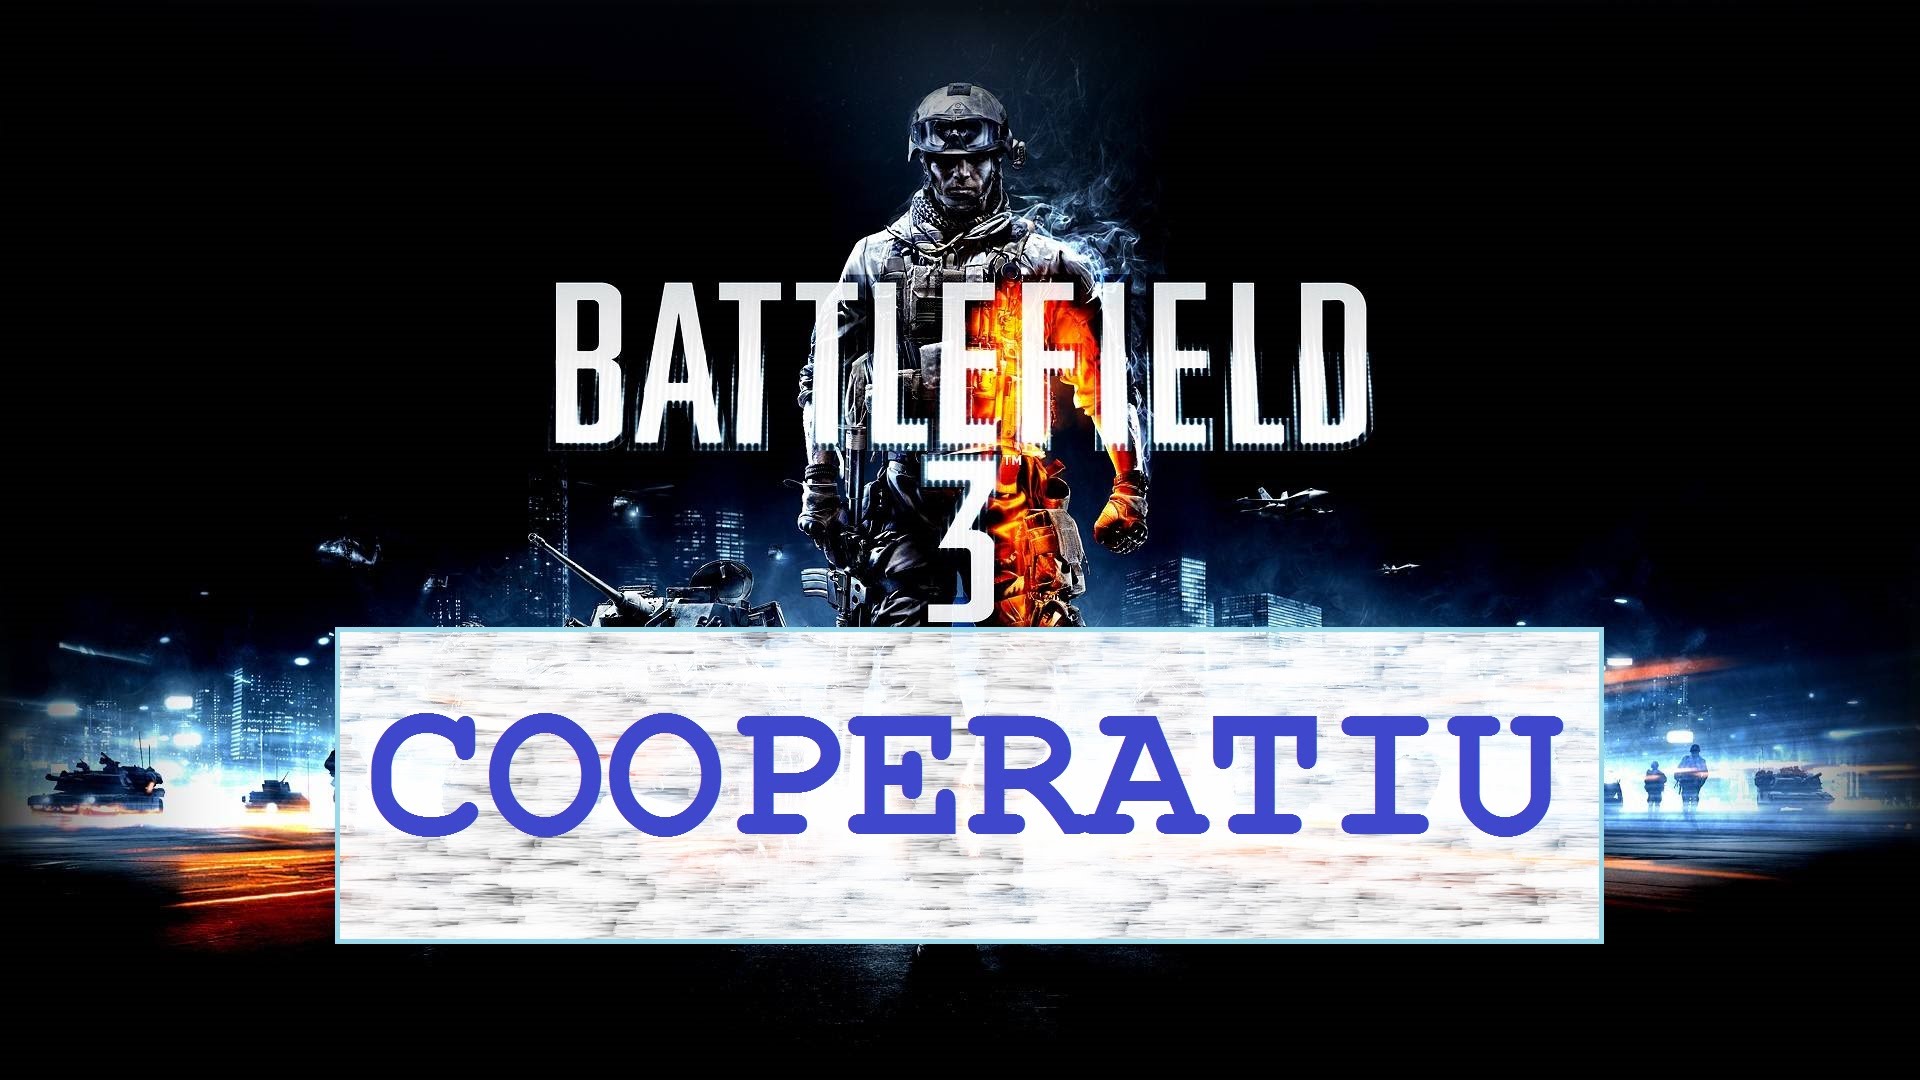 Battlefield 3 - Cooperatiu - 3a Missió de Arandur